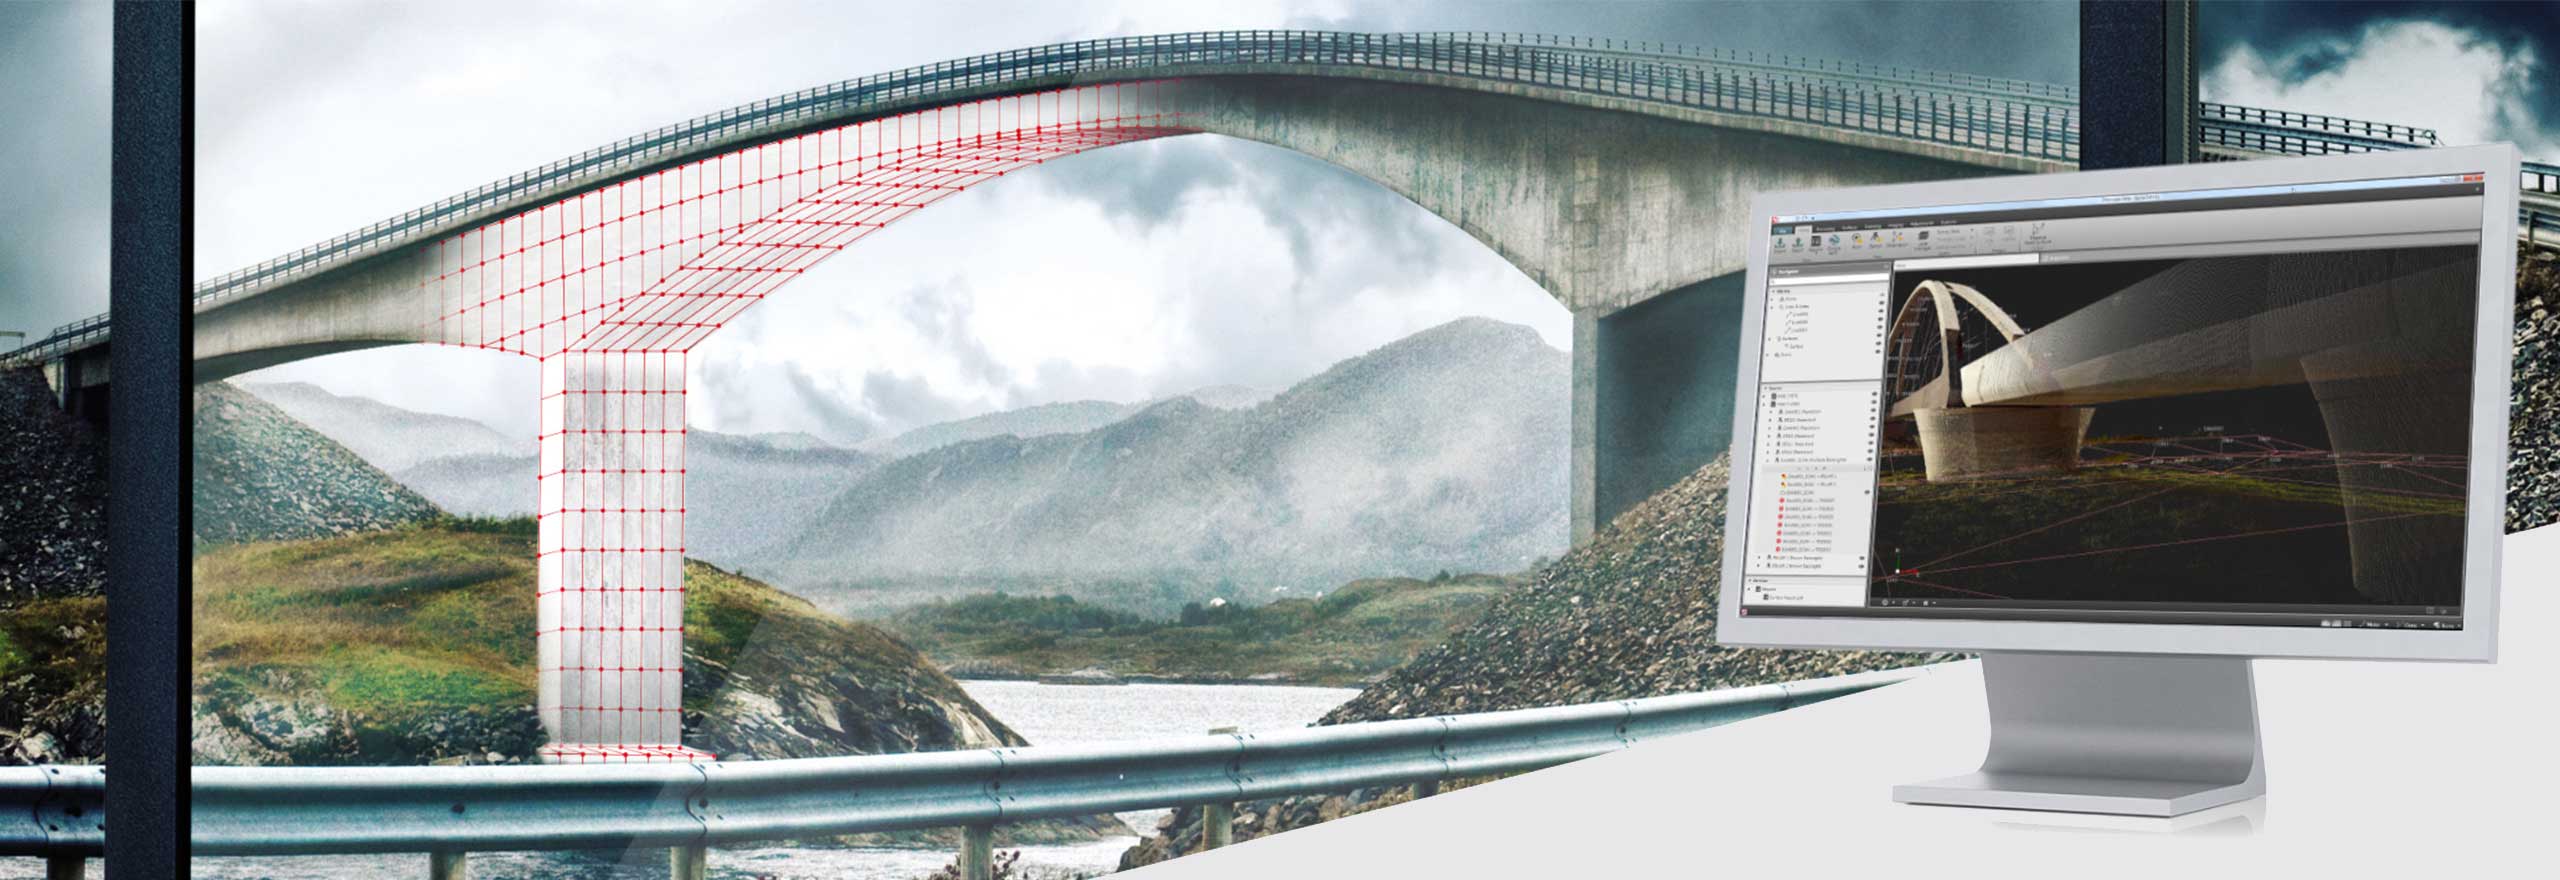 modelo digital de uma ponte visualizada no software de topografia Leica Infinity 